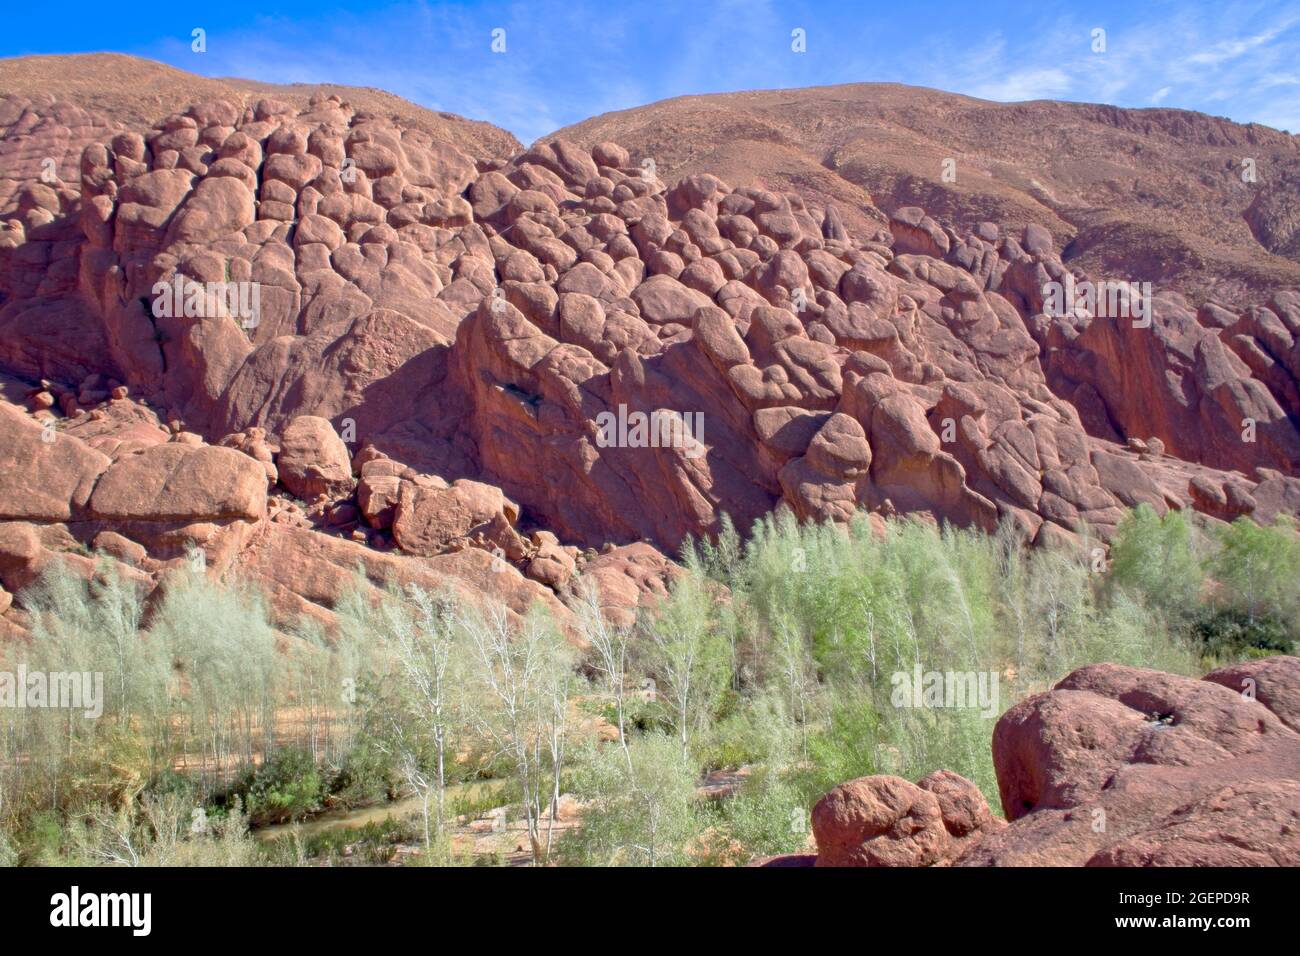 Ungewöhnliche Felsformationen entlang des Dades-Flusstals bei Boumalne Dades, Marokko. Stockfoto